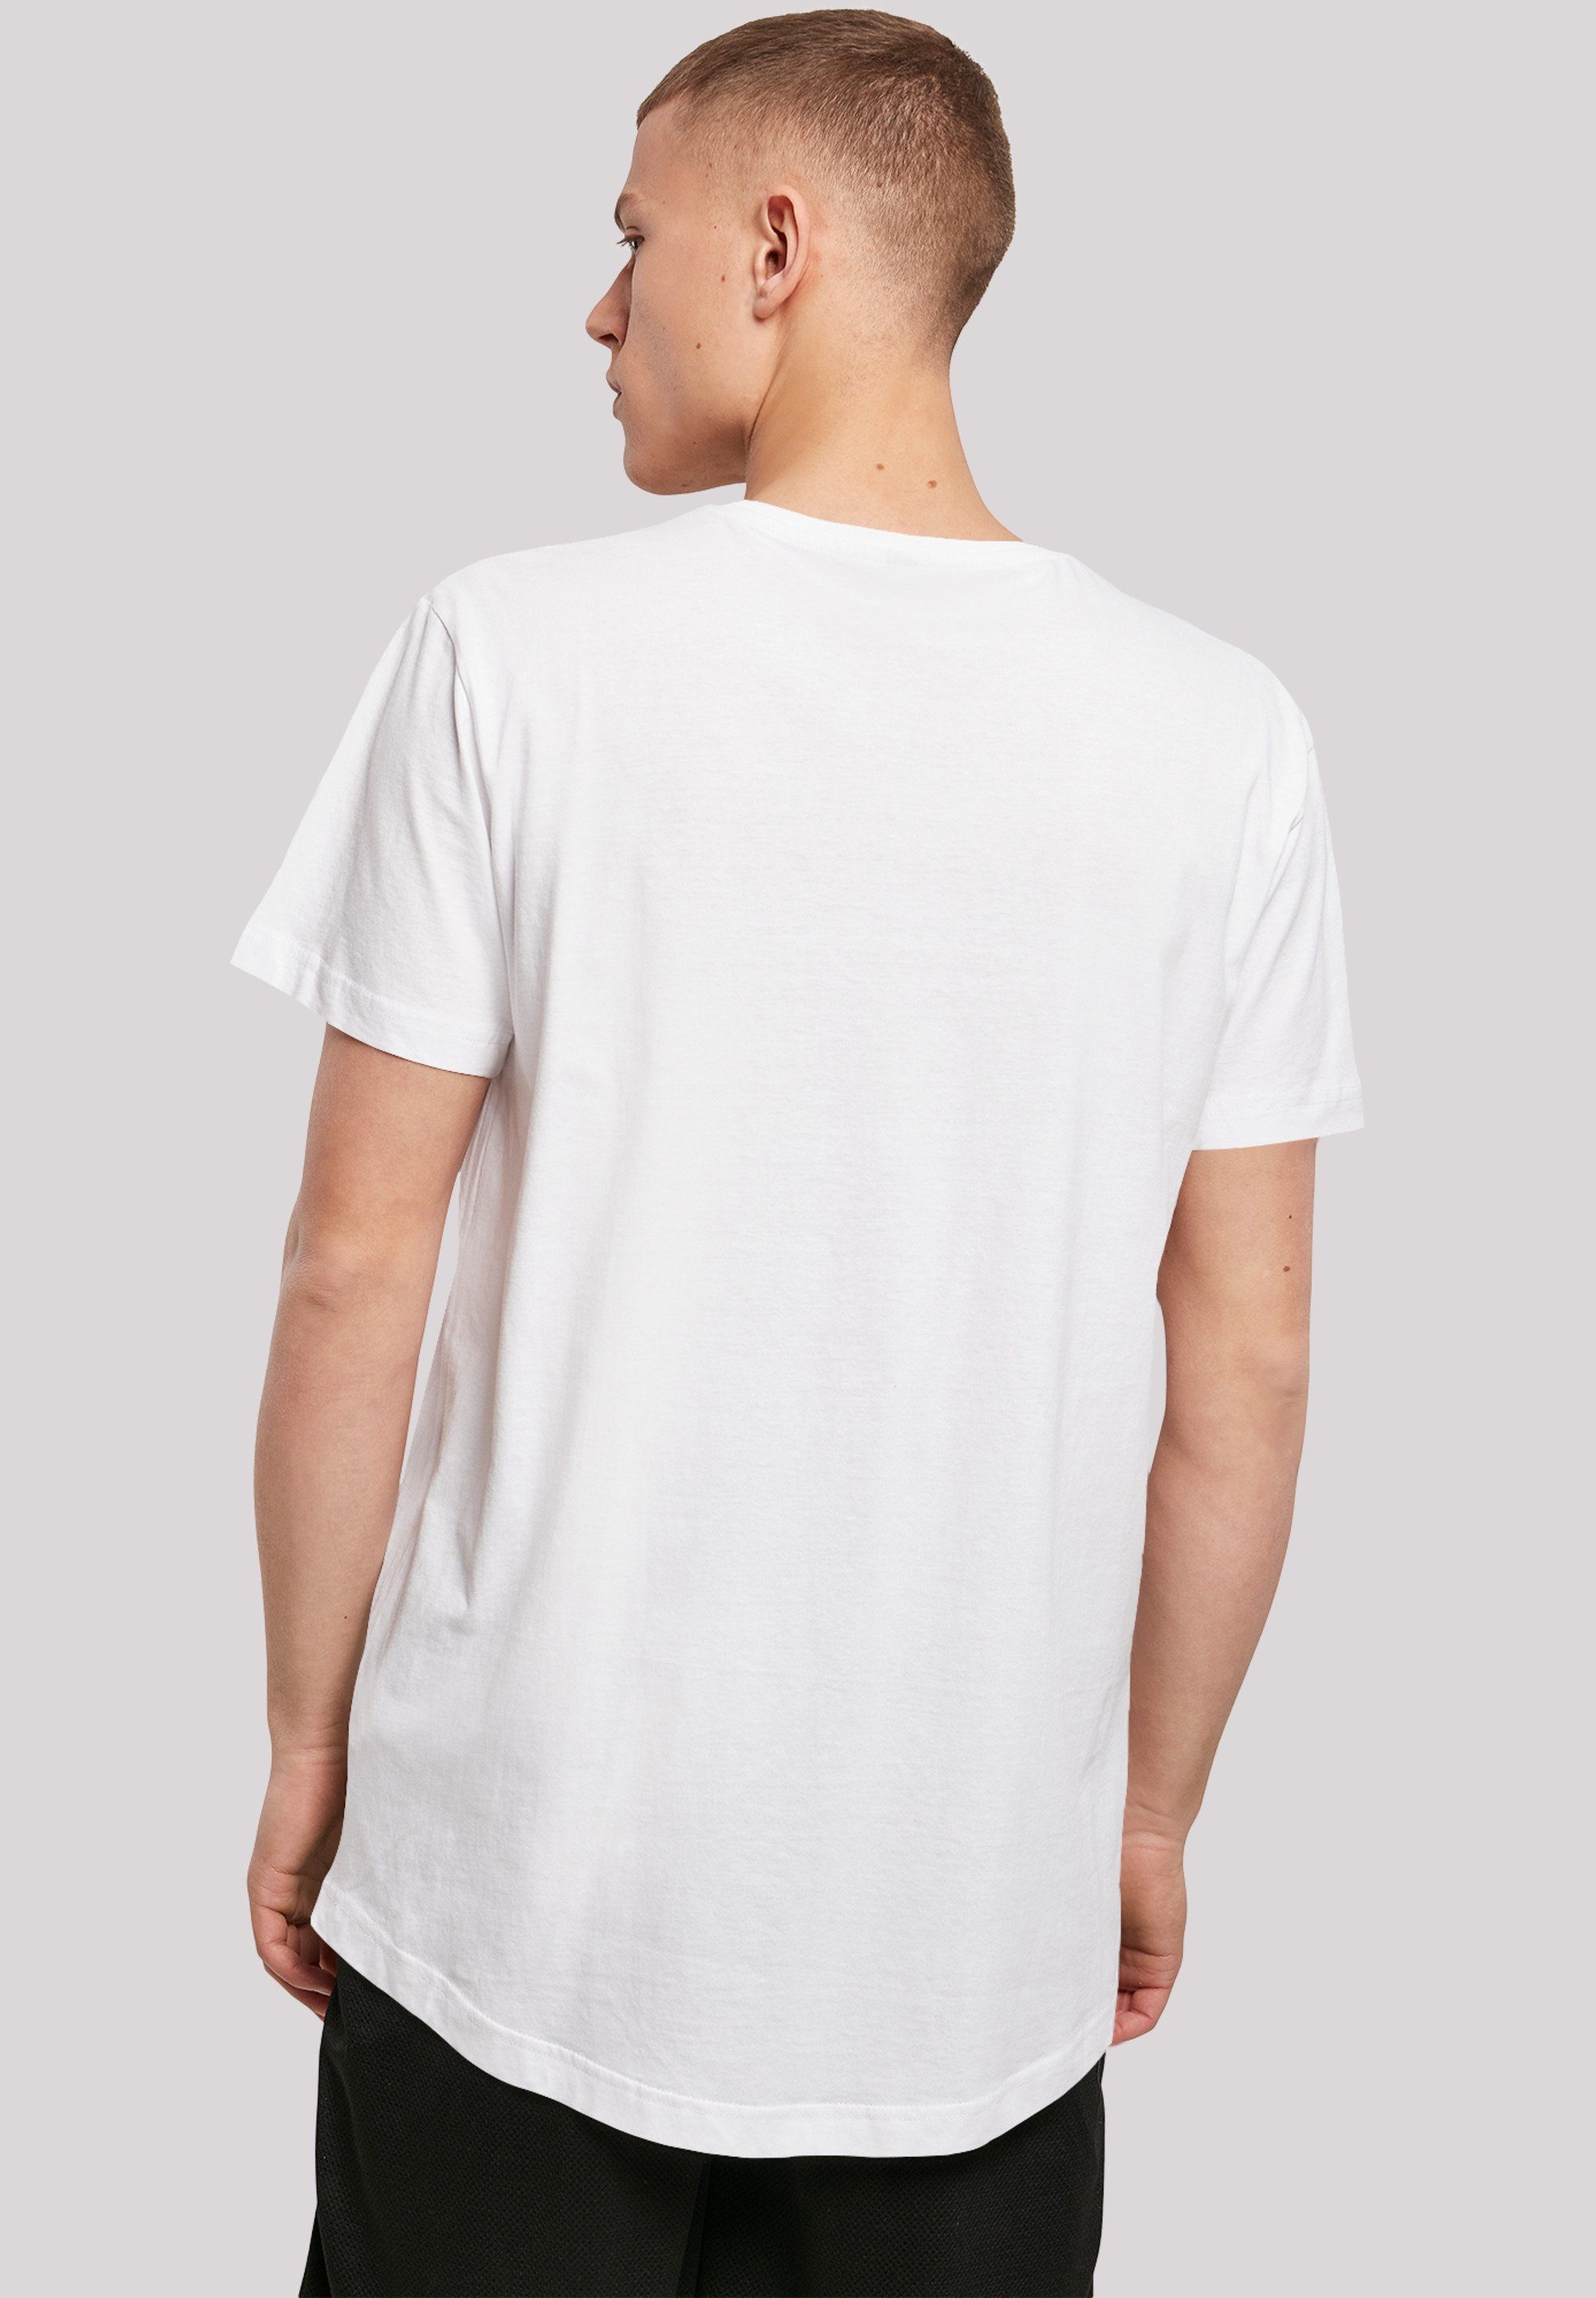 White T-Shirt F4NT4STIC Print Schneewittchen weiß Disney Boys Snow Graphic